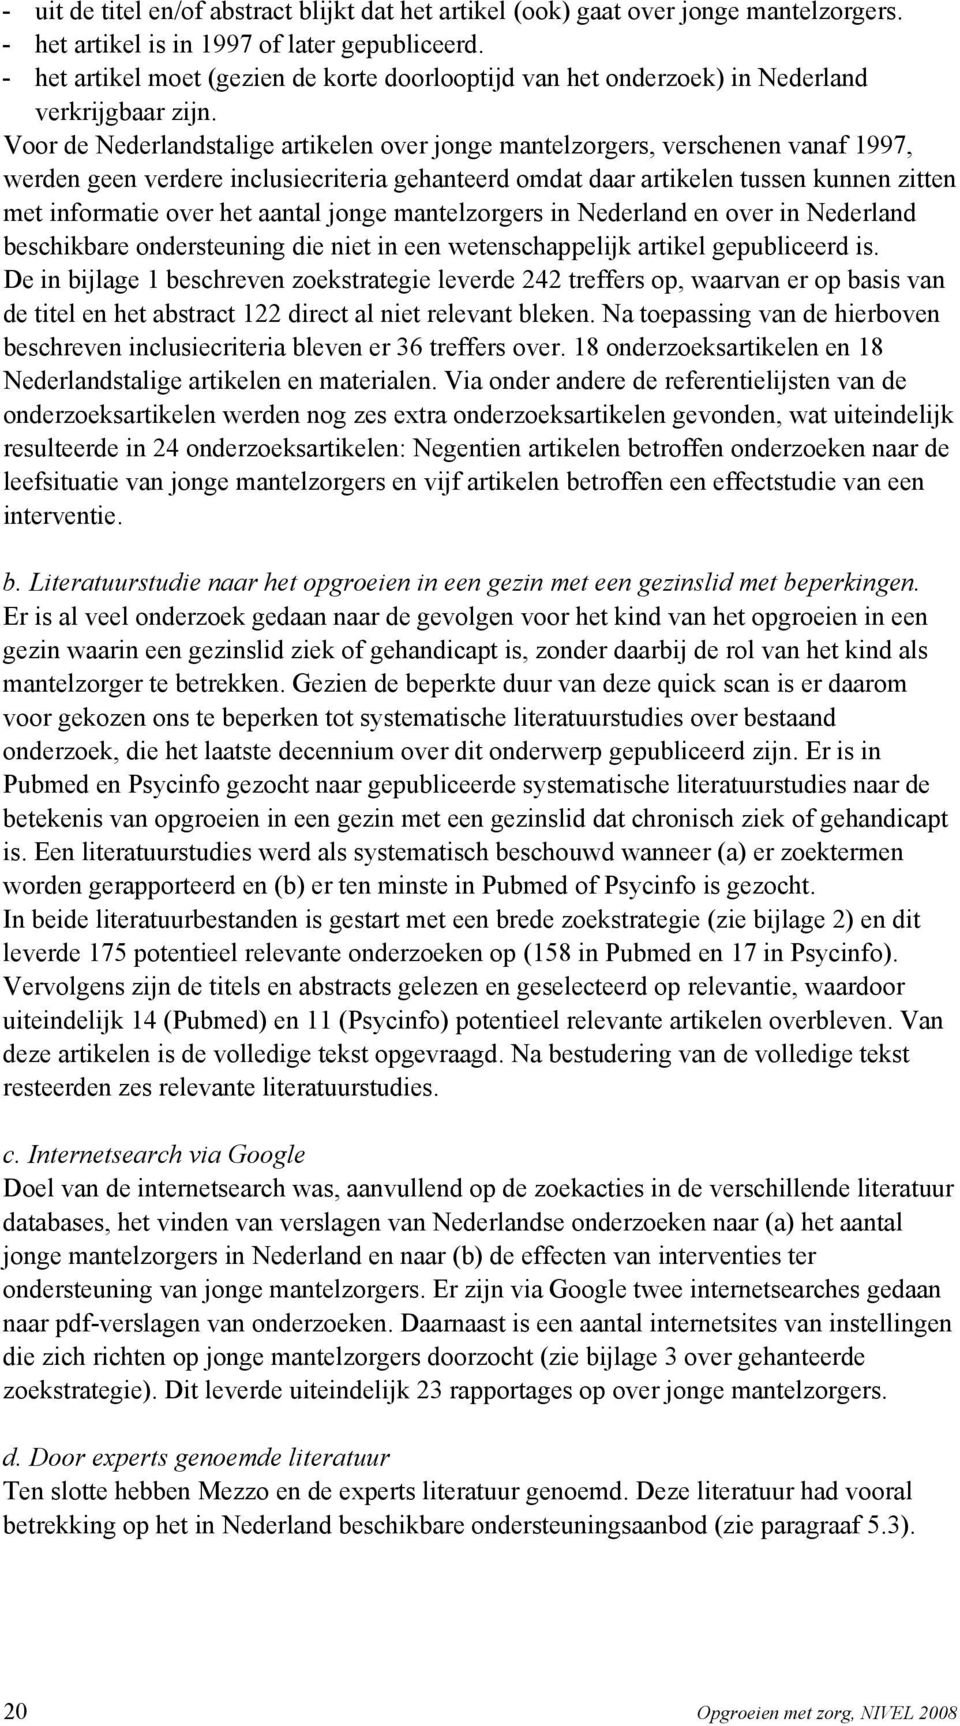 Voor de Nederlandstalige artikelen over jonge mantelzorgers, verschenen vanaf 1997, werden geen verdere inclusiecriteria gehanteerd omdat daar artikelen tussen kunnen zitten met informatie over het